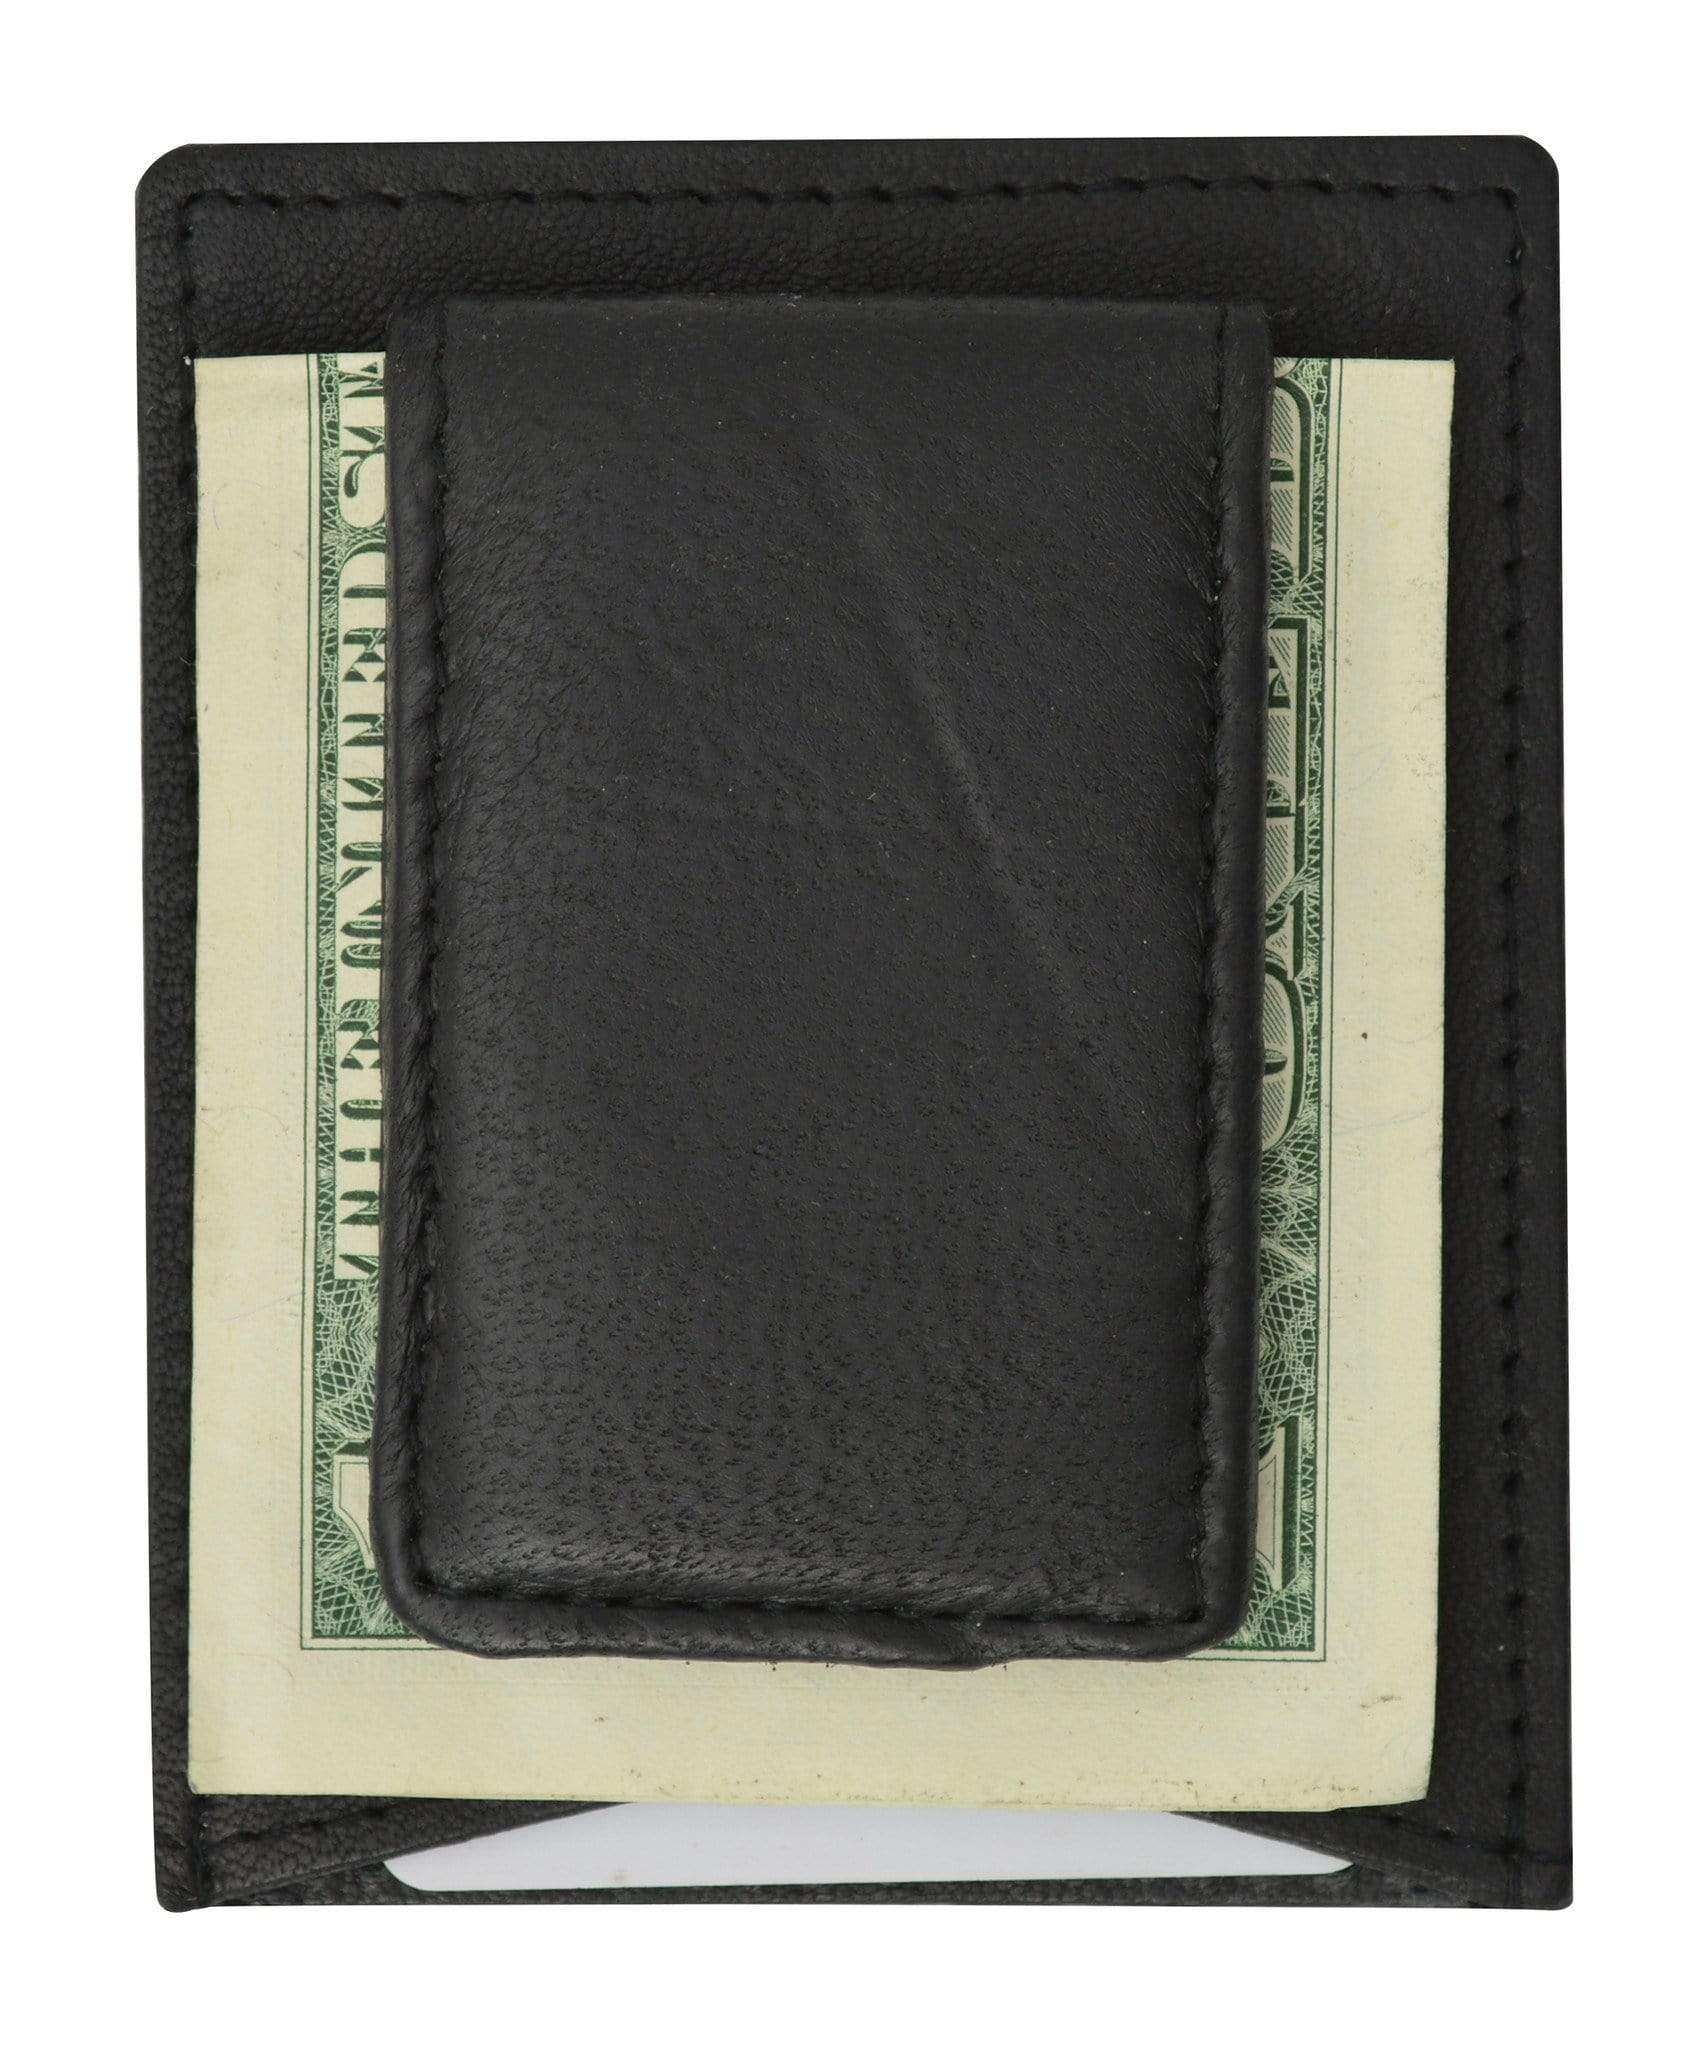 Marshal Mens Genuine Leather Money Clip Credit Card Holder Wallet Multiple Colors 1010R , Men's, Orange